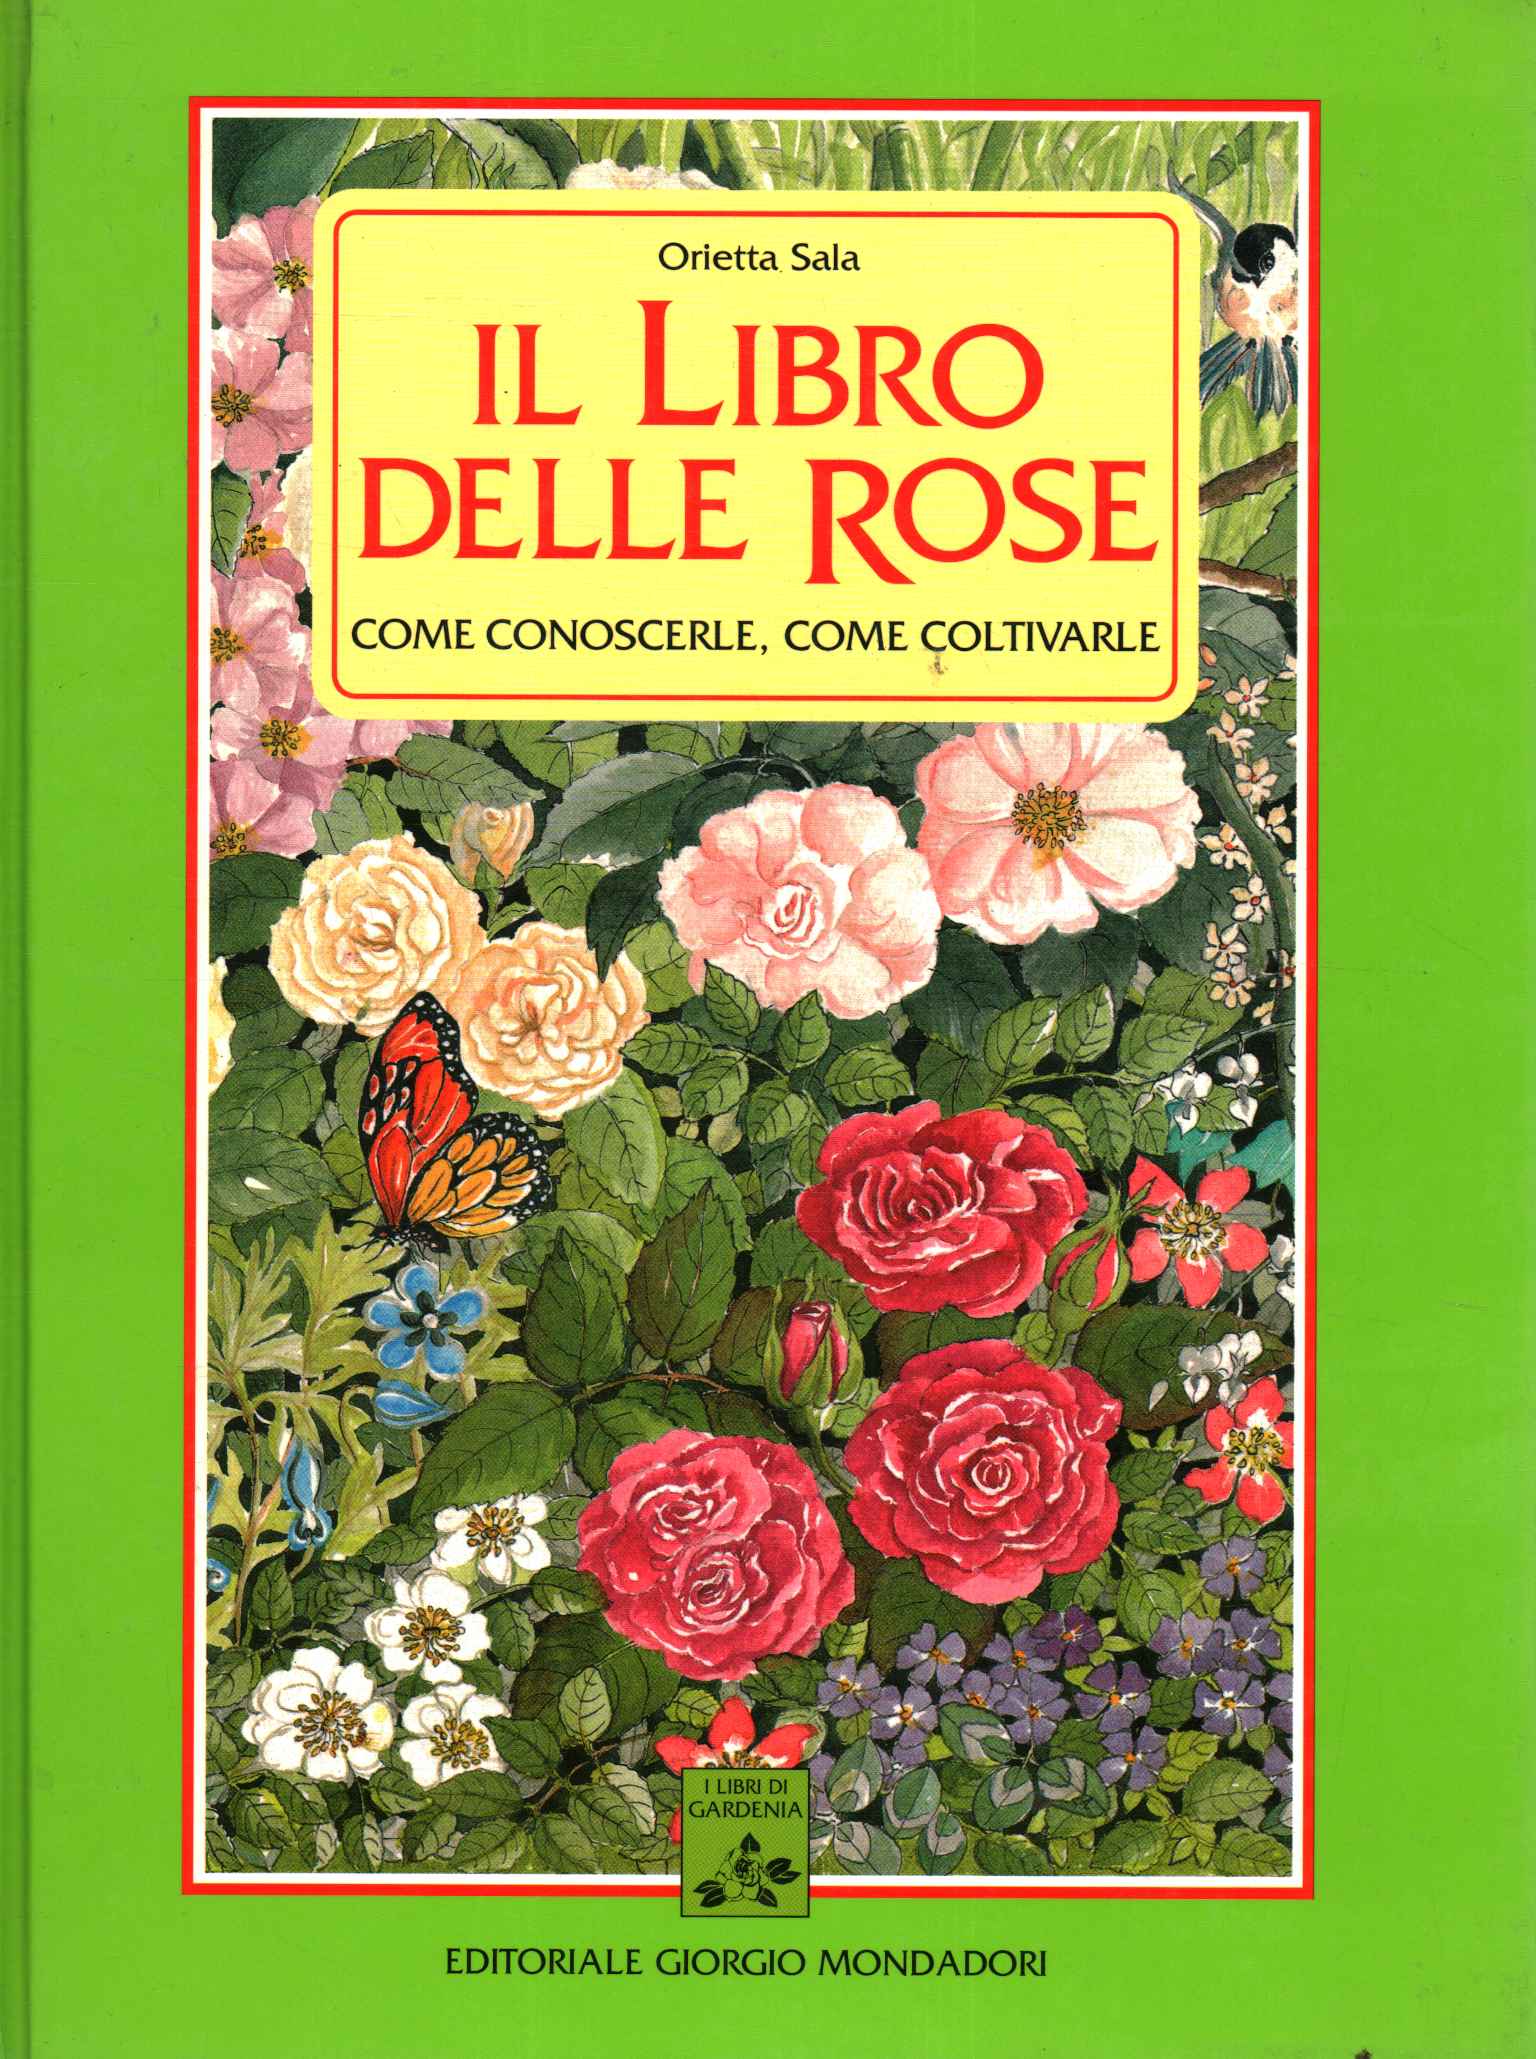 El libro de las rosas